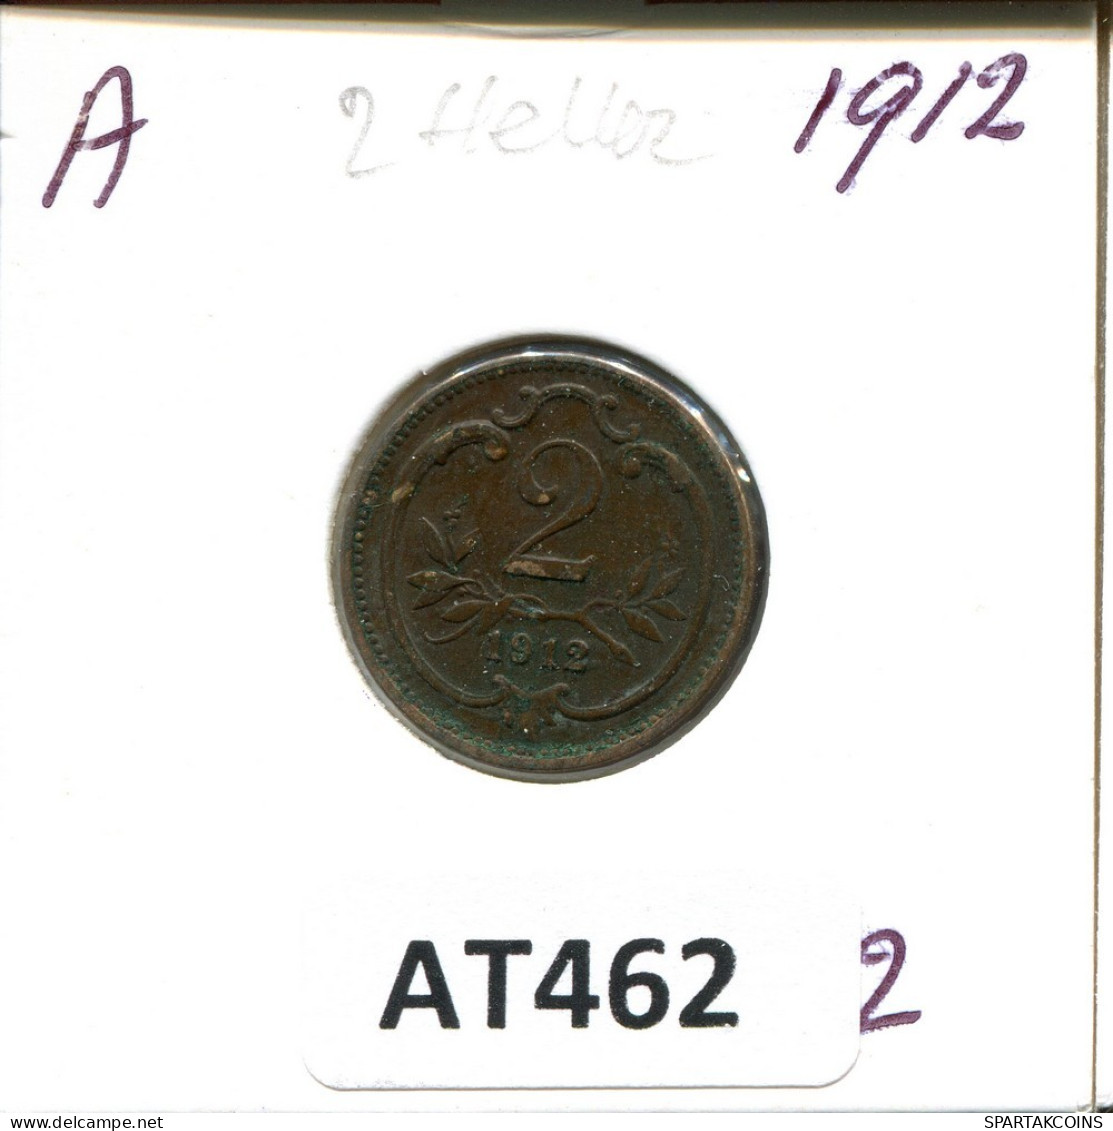 2 HELLER 1912 AUSTRIA Coin #AT462.U.A - Austria